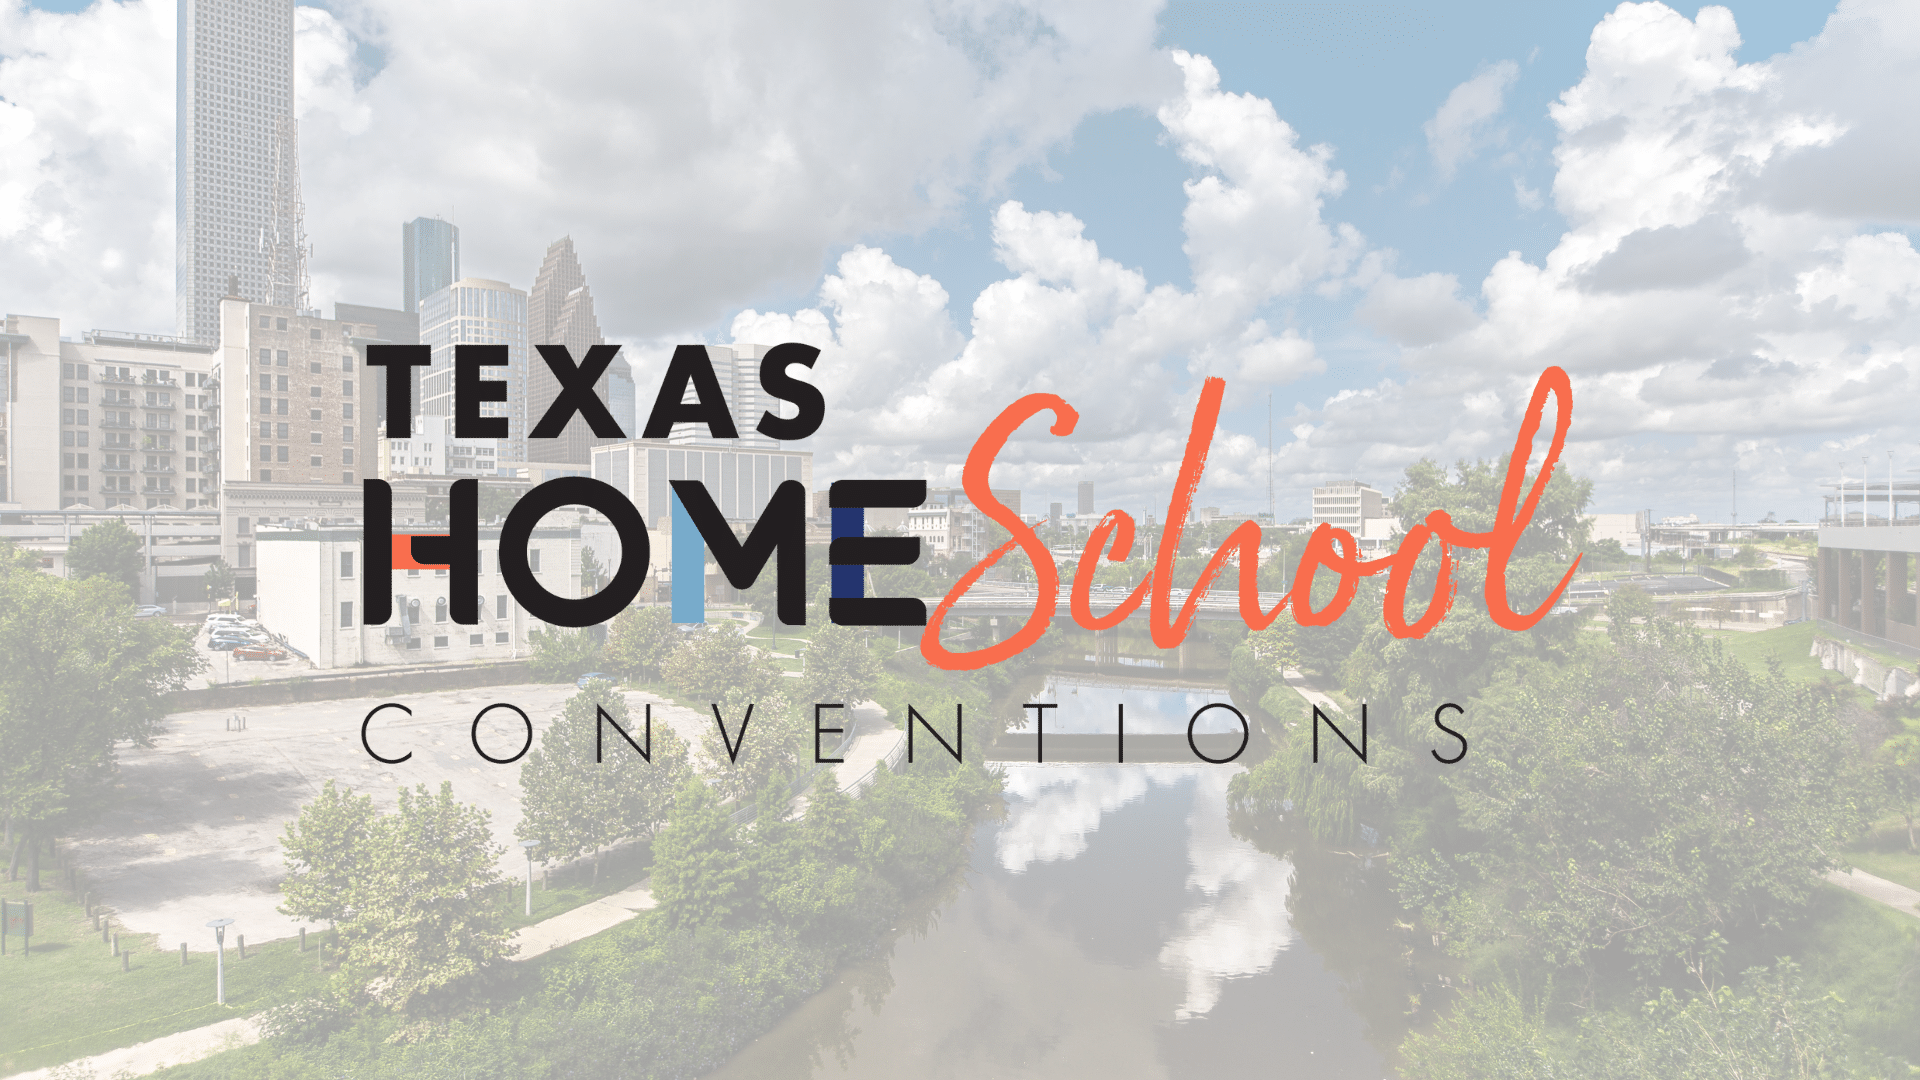 Texas Homeschool Convention Houston Apologia